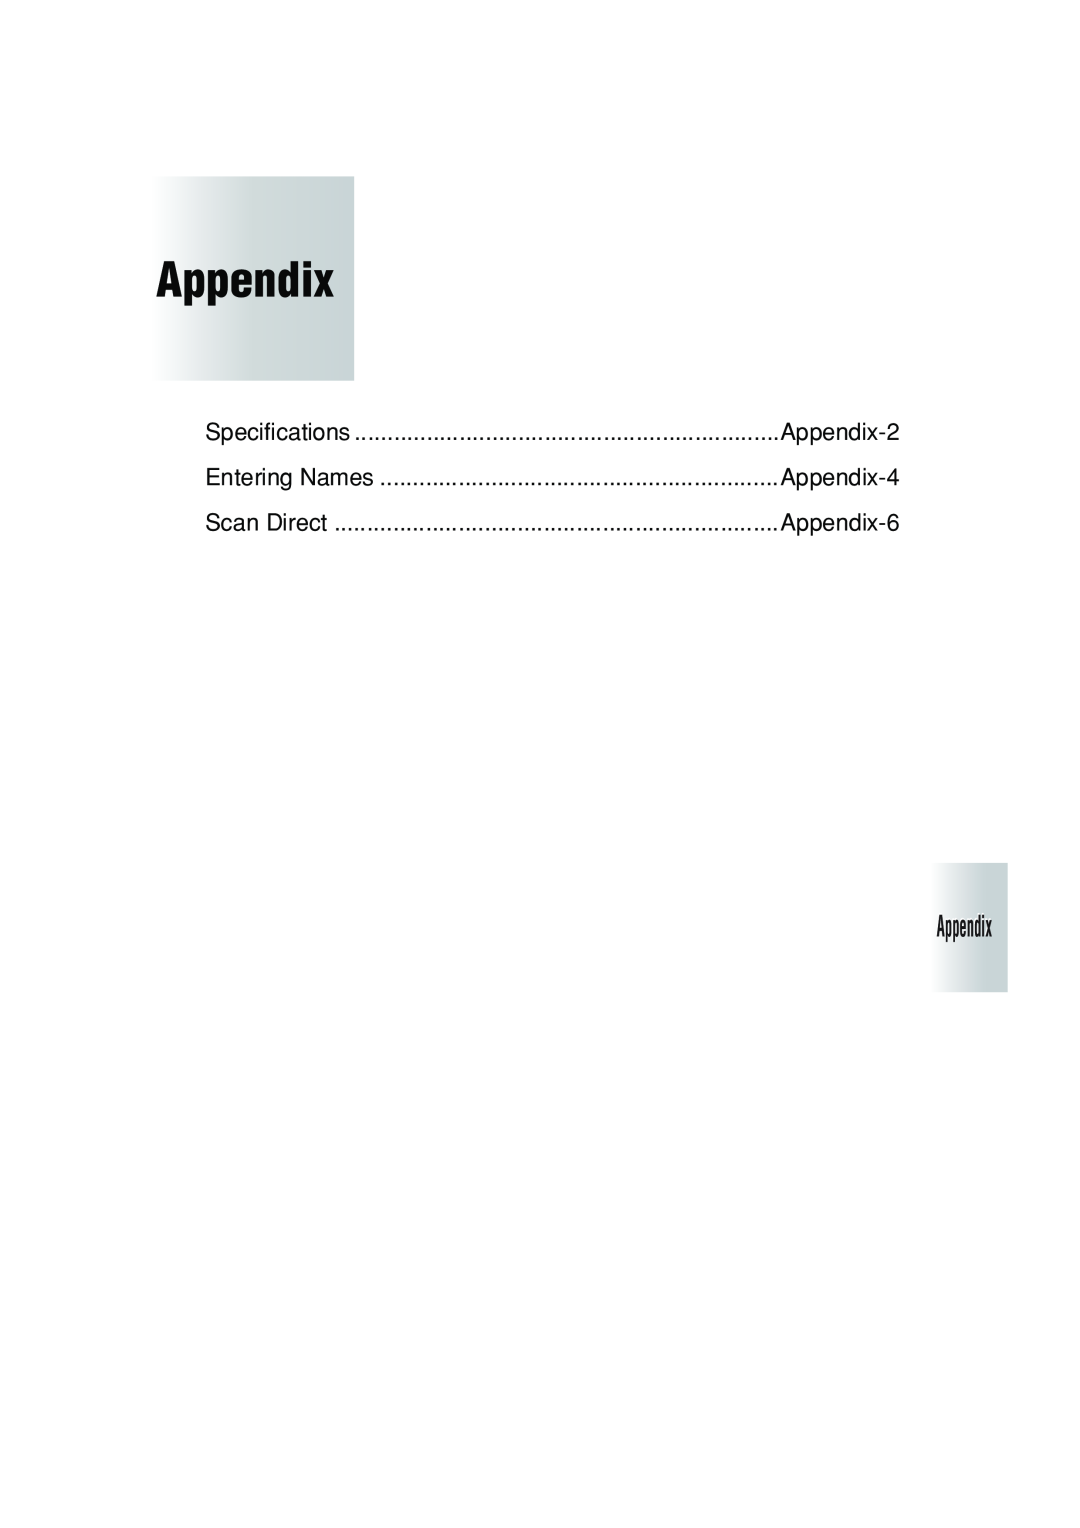 Konica Minolta 7222 manual Appendix-2, Appendix-4, Appendix-6, Specifications, Entering Names, Scan Direct 